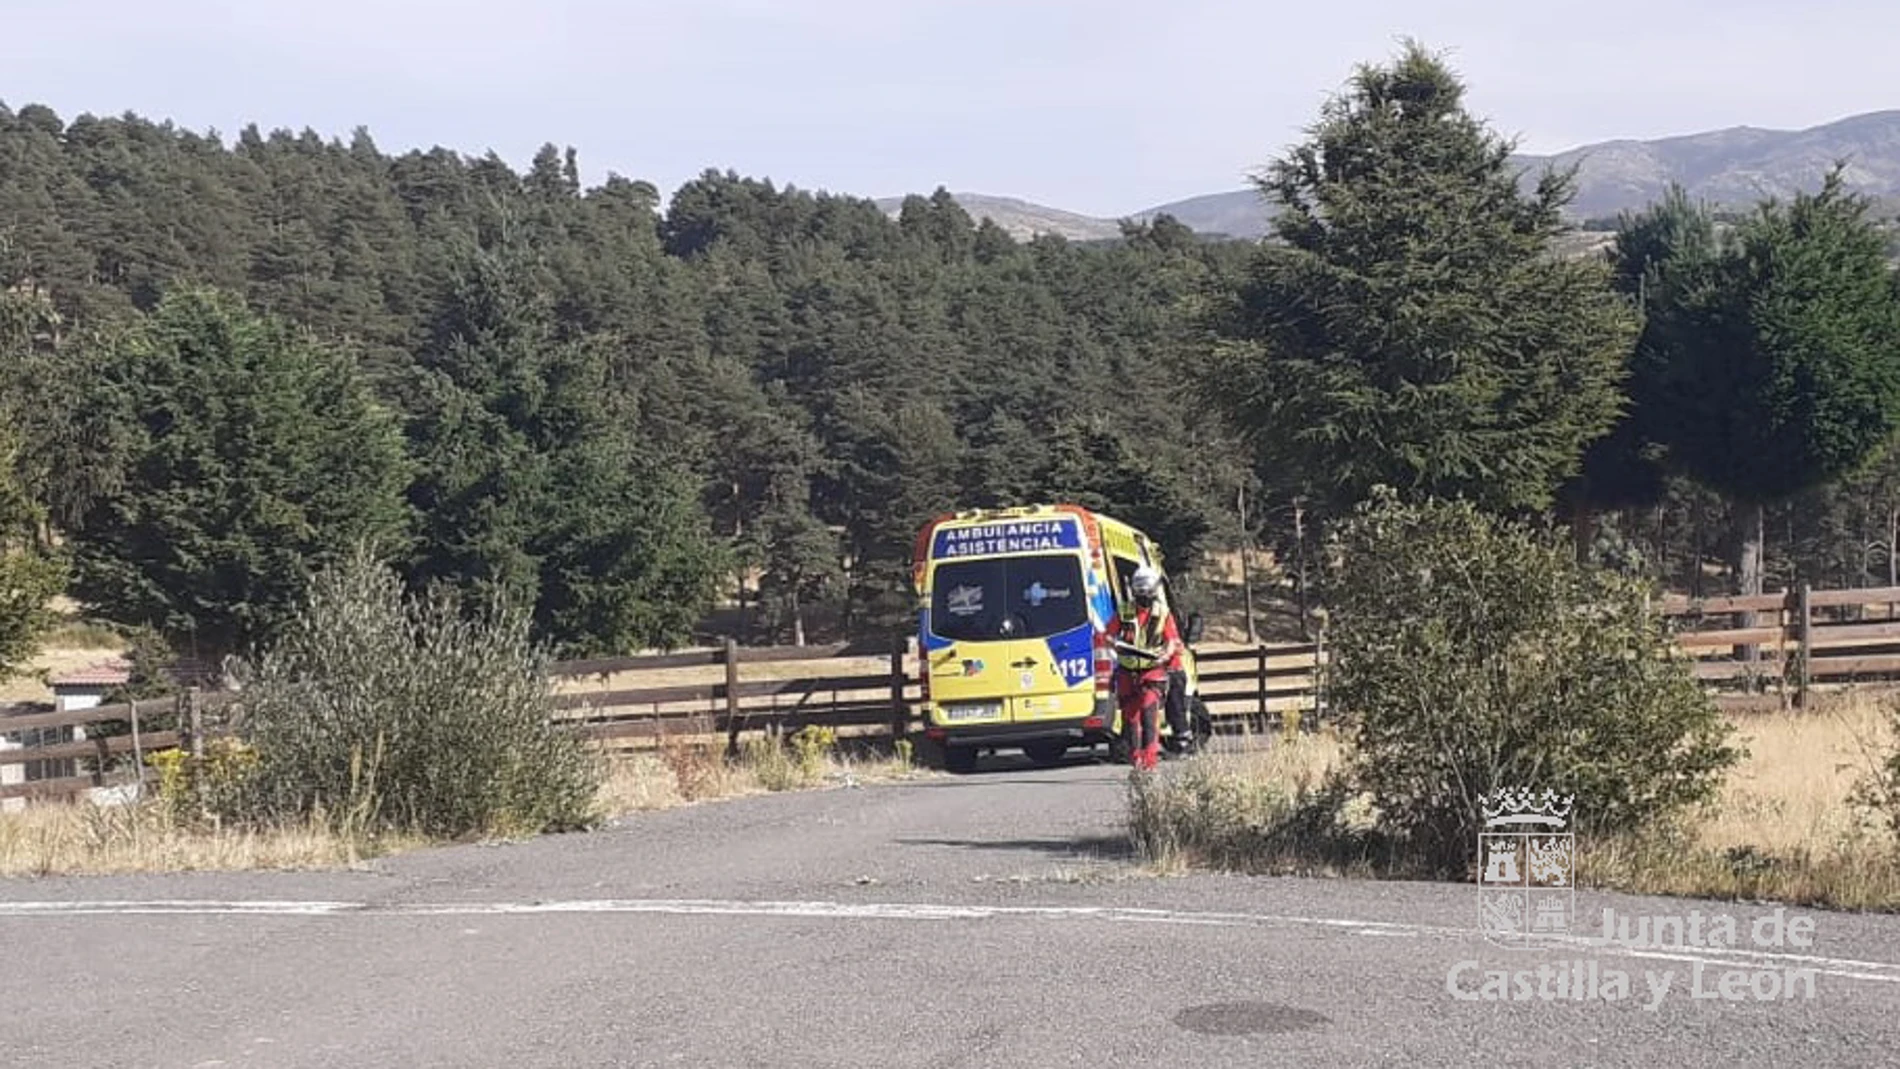 Rescatada una montañera de 27 años tras perder el conocimiento al caerle una piedra en la cabeza en la Laguna Grande de Gredos (Ávila)